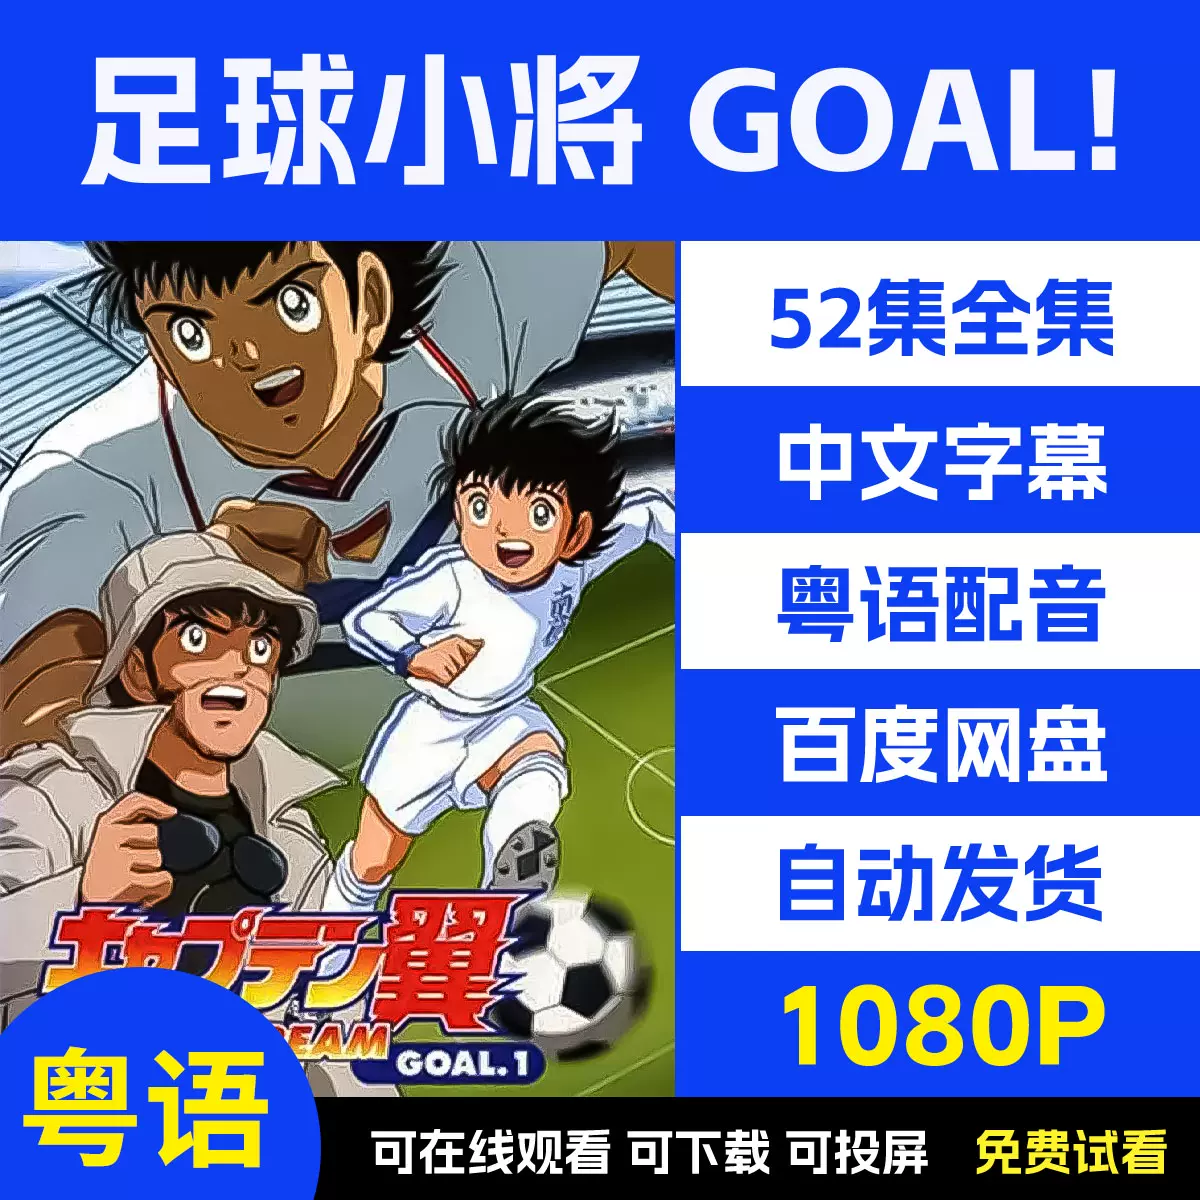 [Skymoon-Raws] 隊長小翼(足球小將) Goal / Captain Tsubasa Goal – 03 [XG Cartoon][WEB-DL][CHT][720p][AVC AAC][MP4]